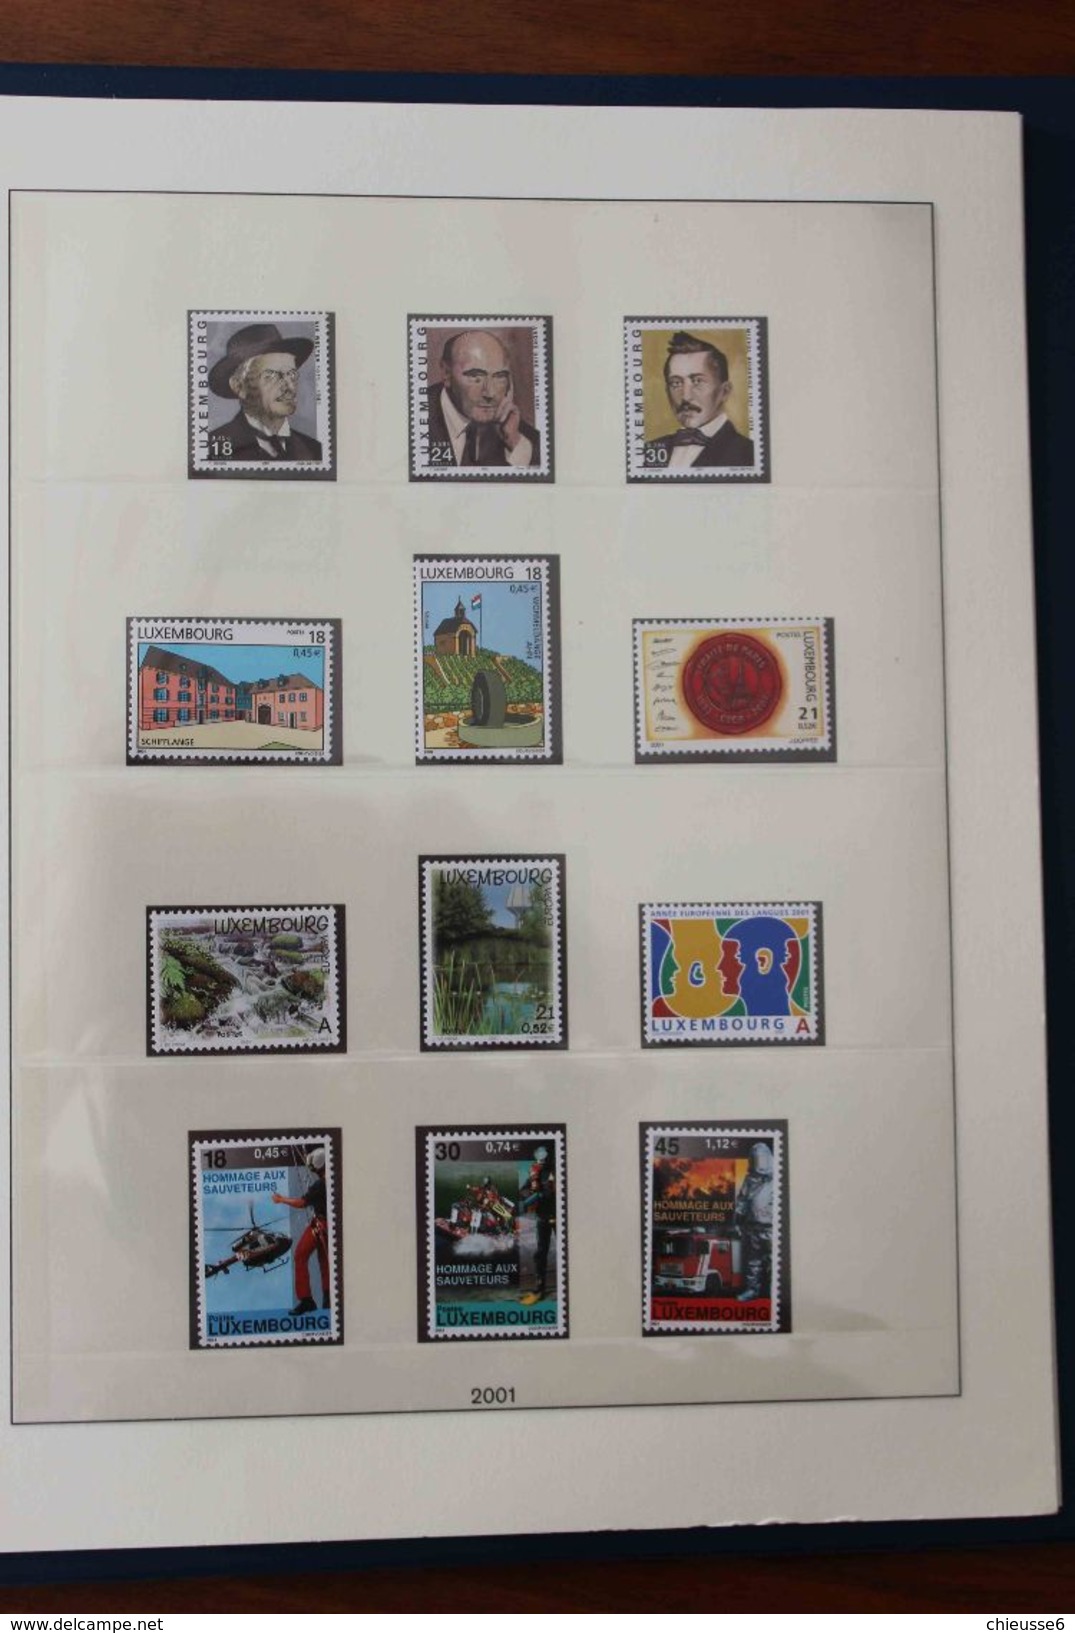 Luxembourg - Reliure Lindner - 1985 à 2004 avec timbres patiquement complète